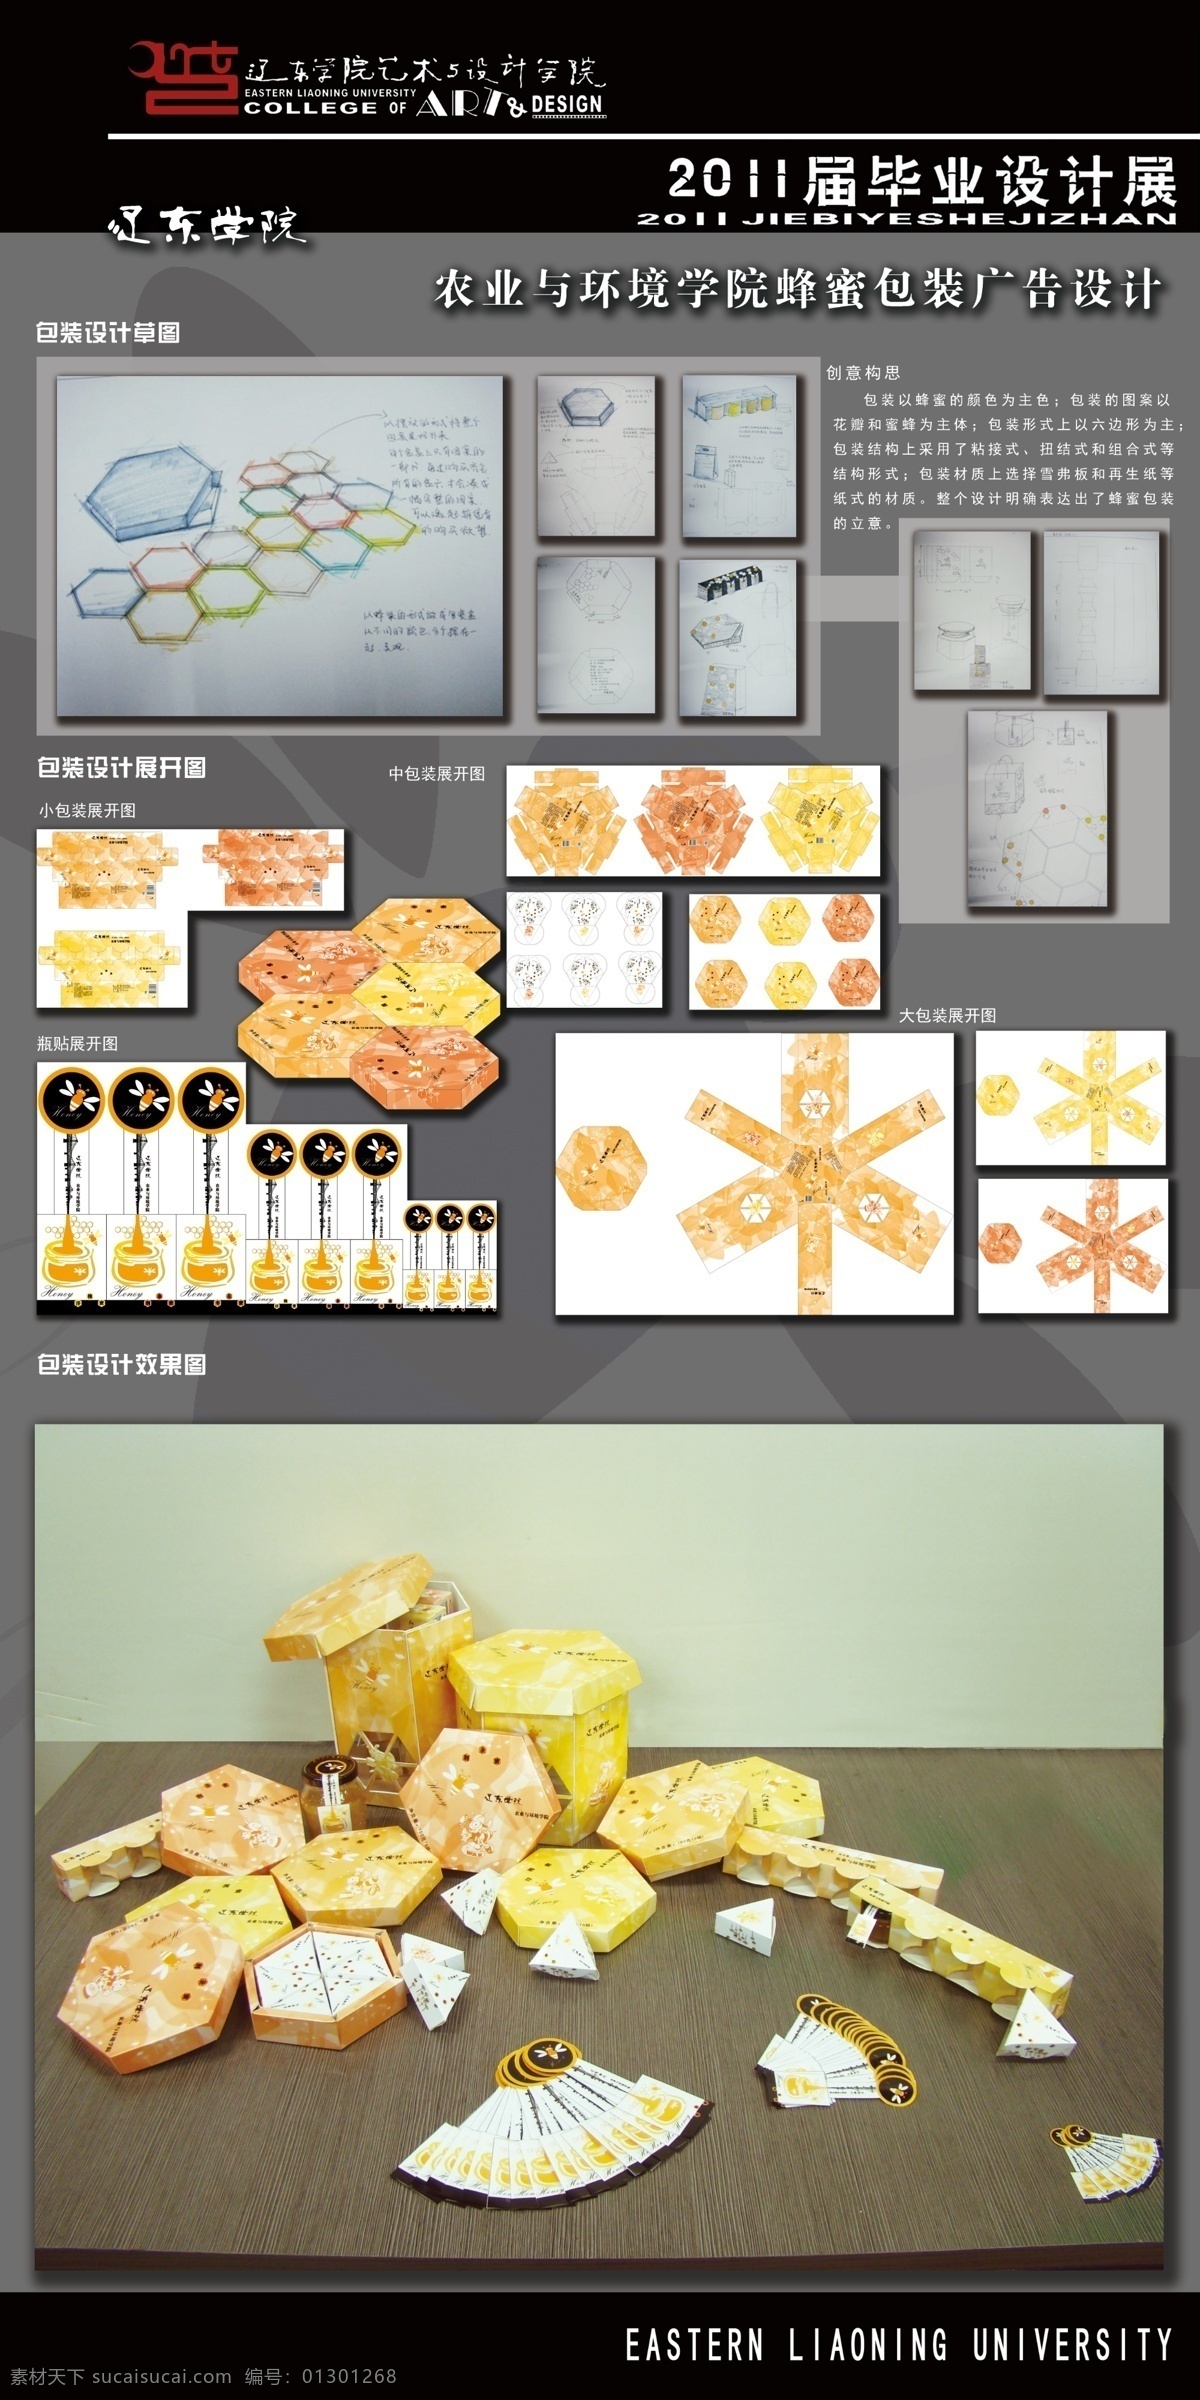 包装设计 展板 蜜蜂 辽东学院 广告设计模板 源文件